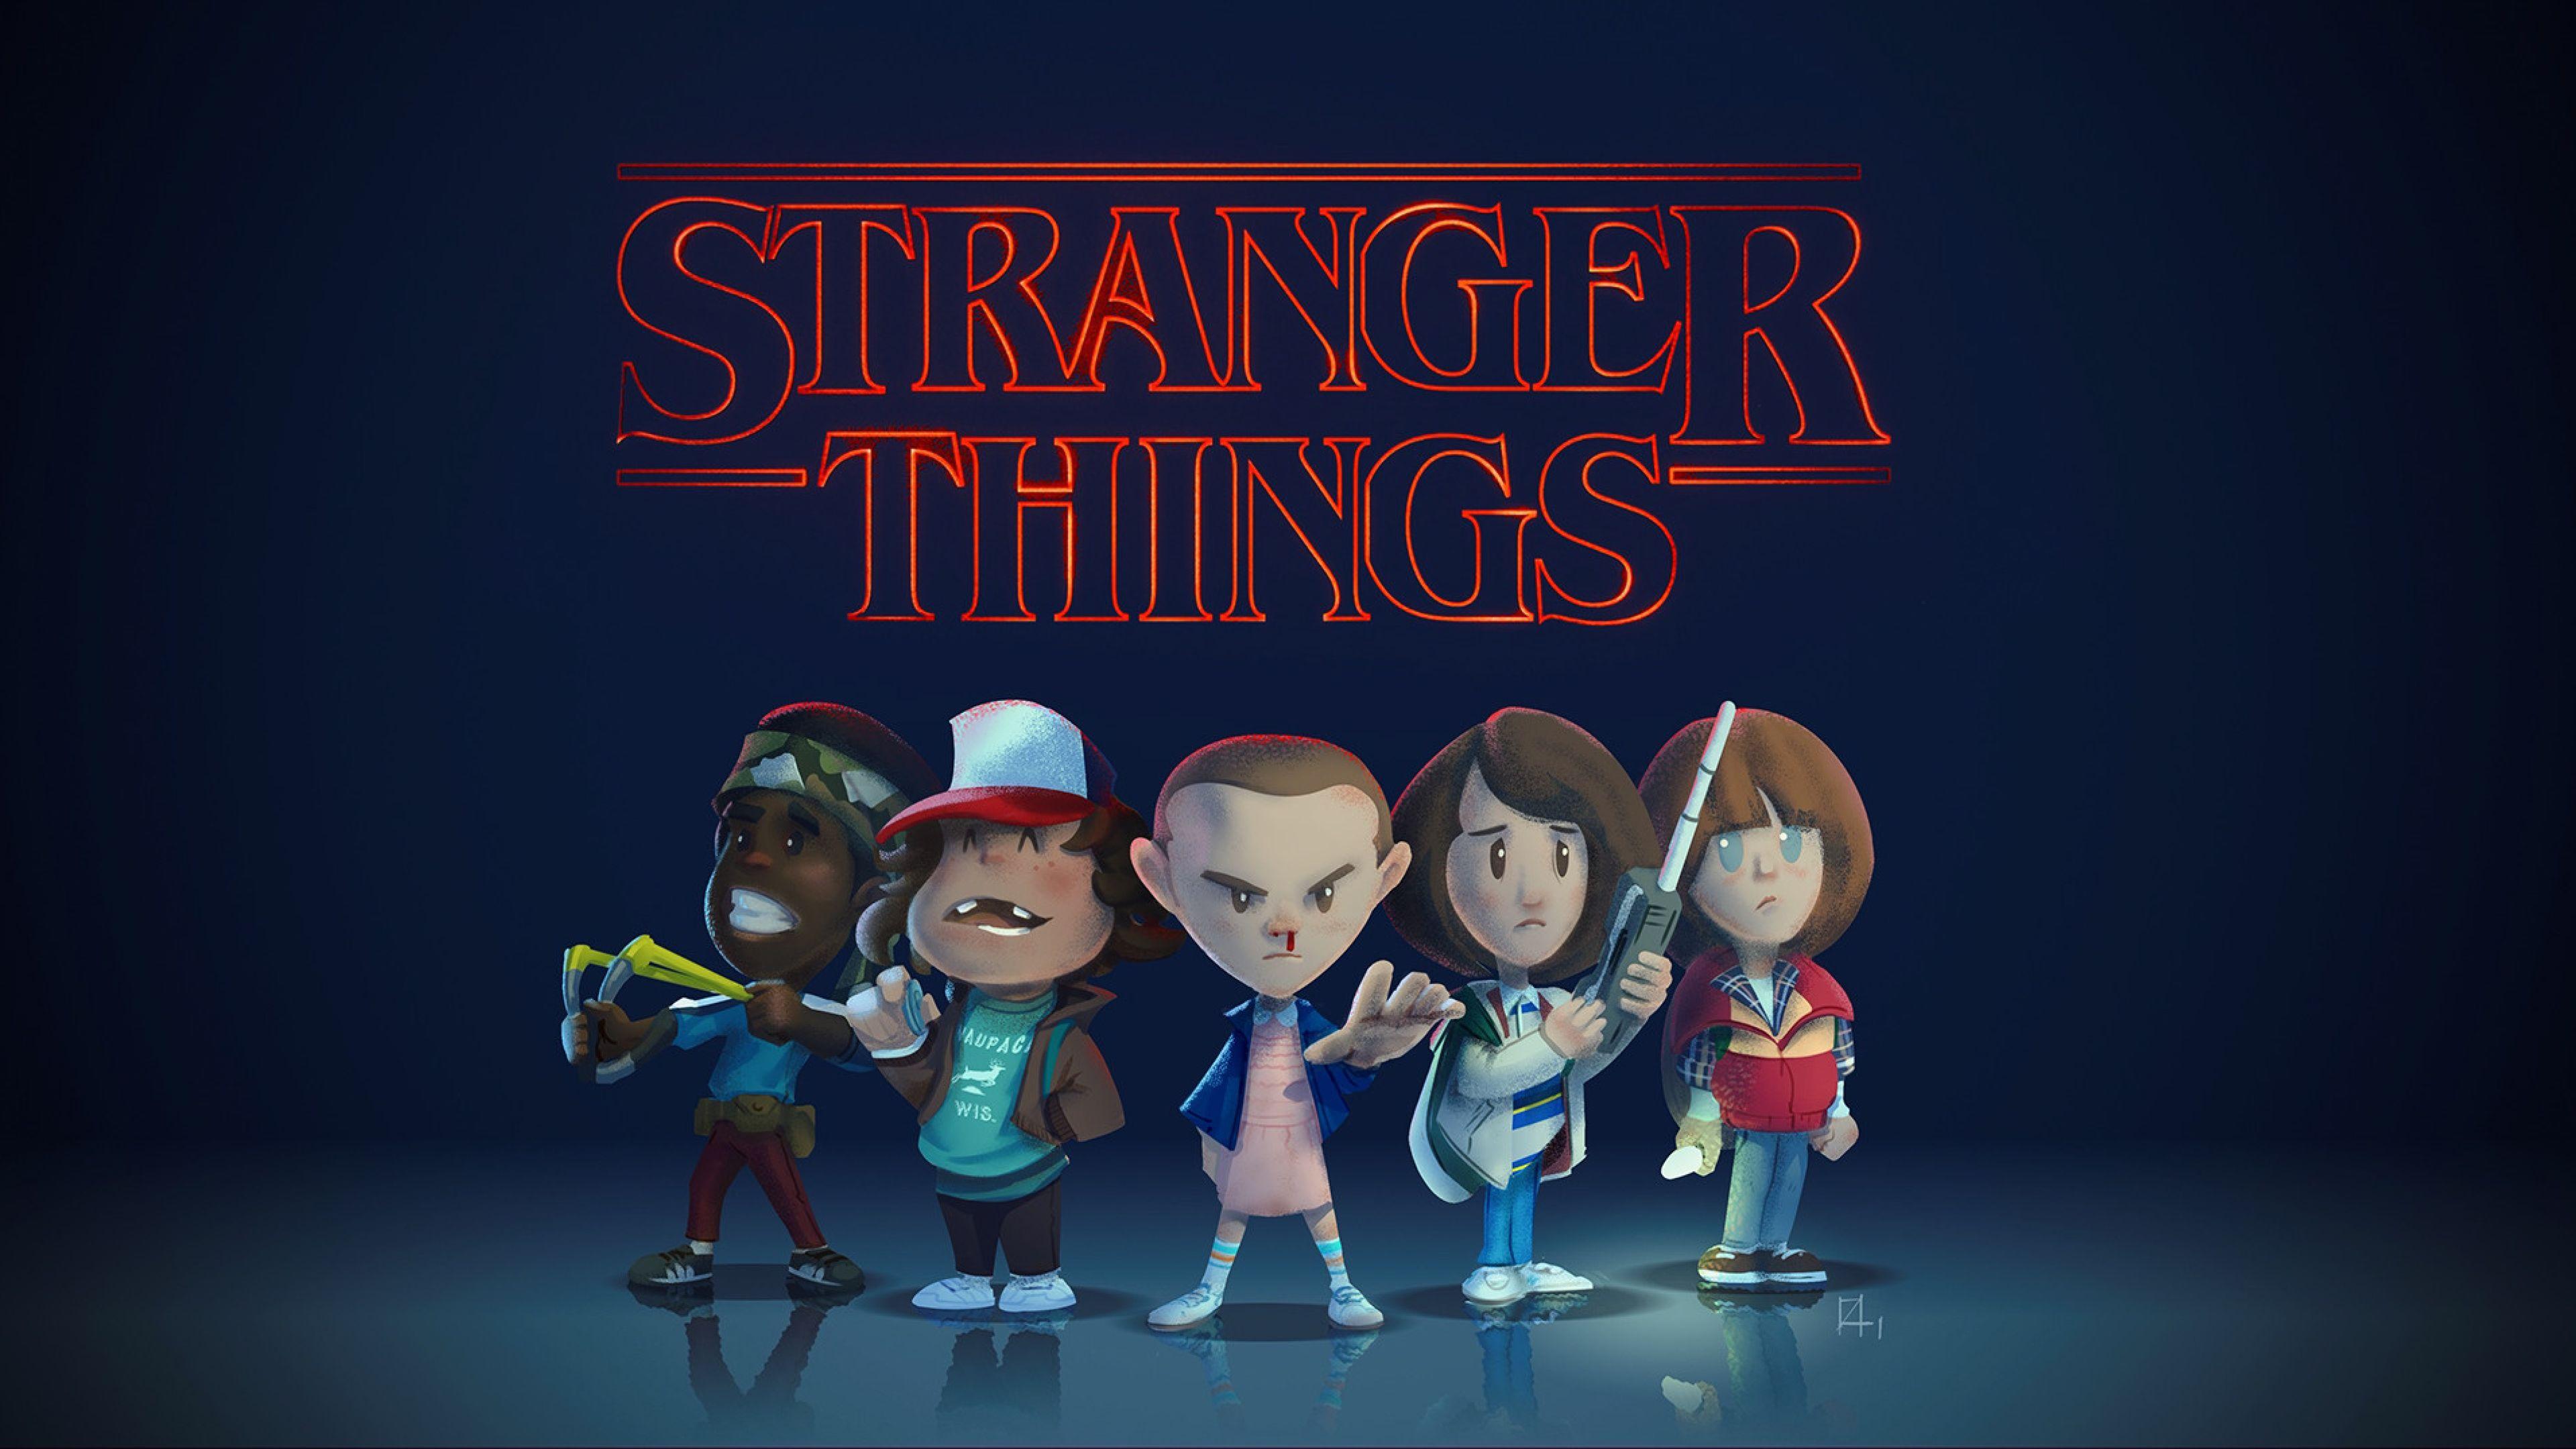 2560x1440 Stranger Things hình nền - Stranger Things hình nền Pc